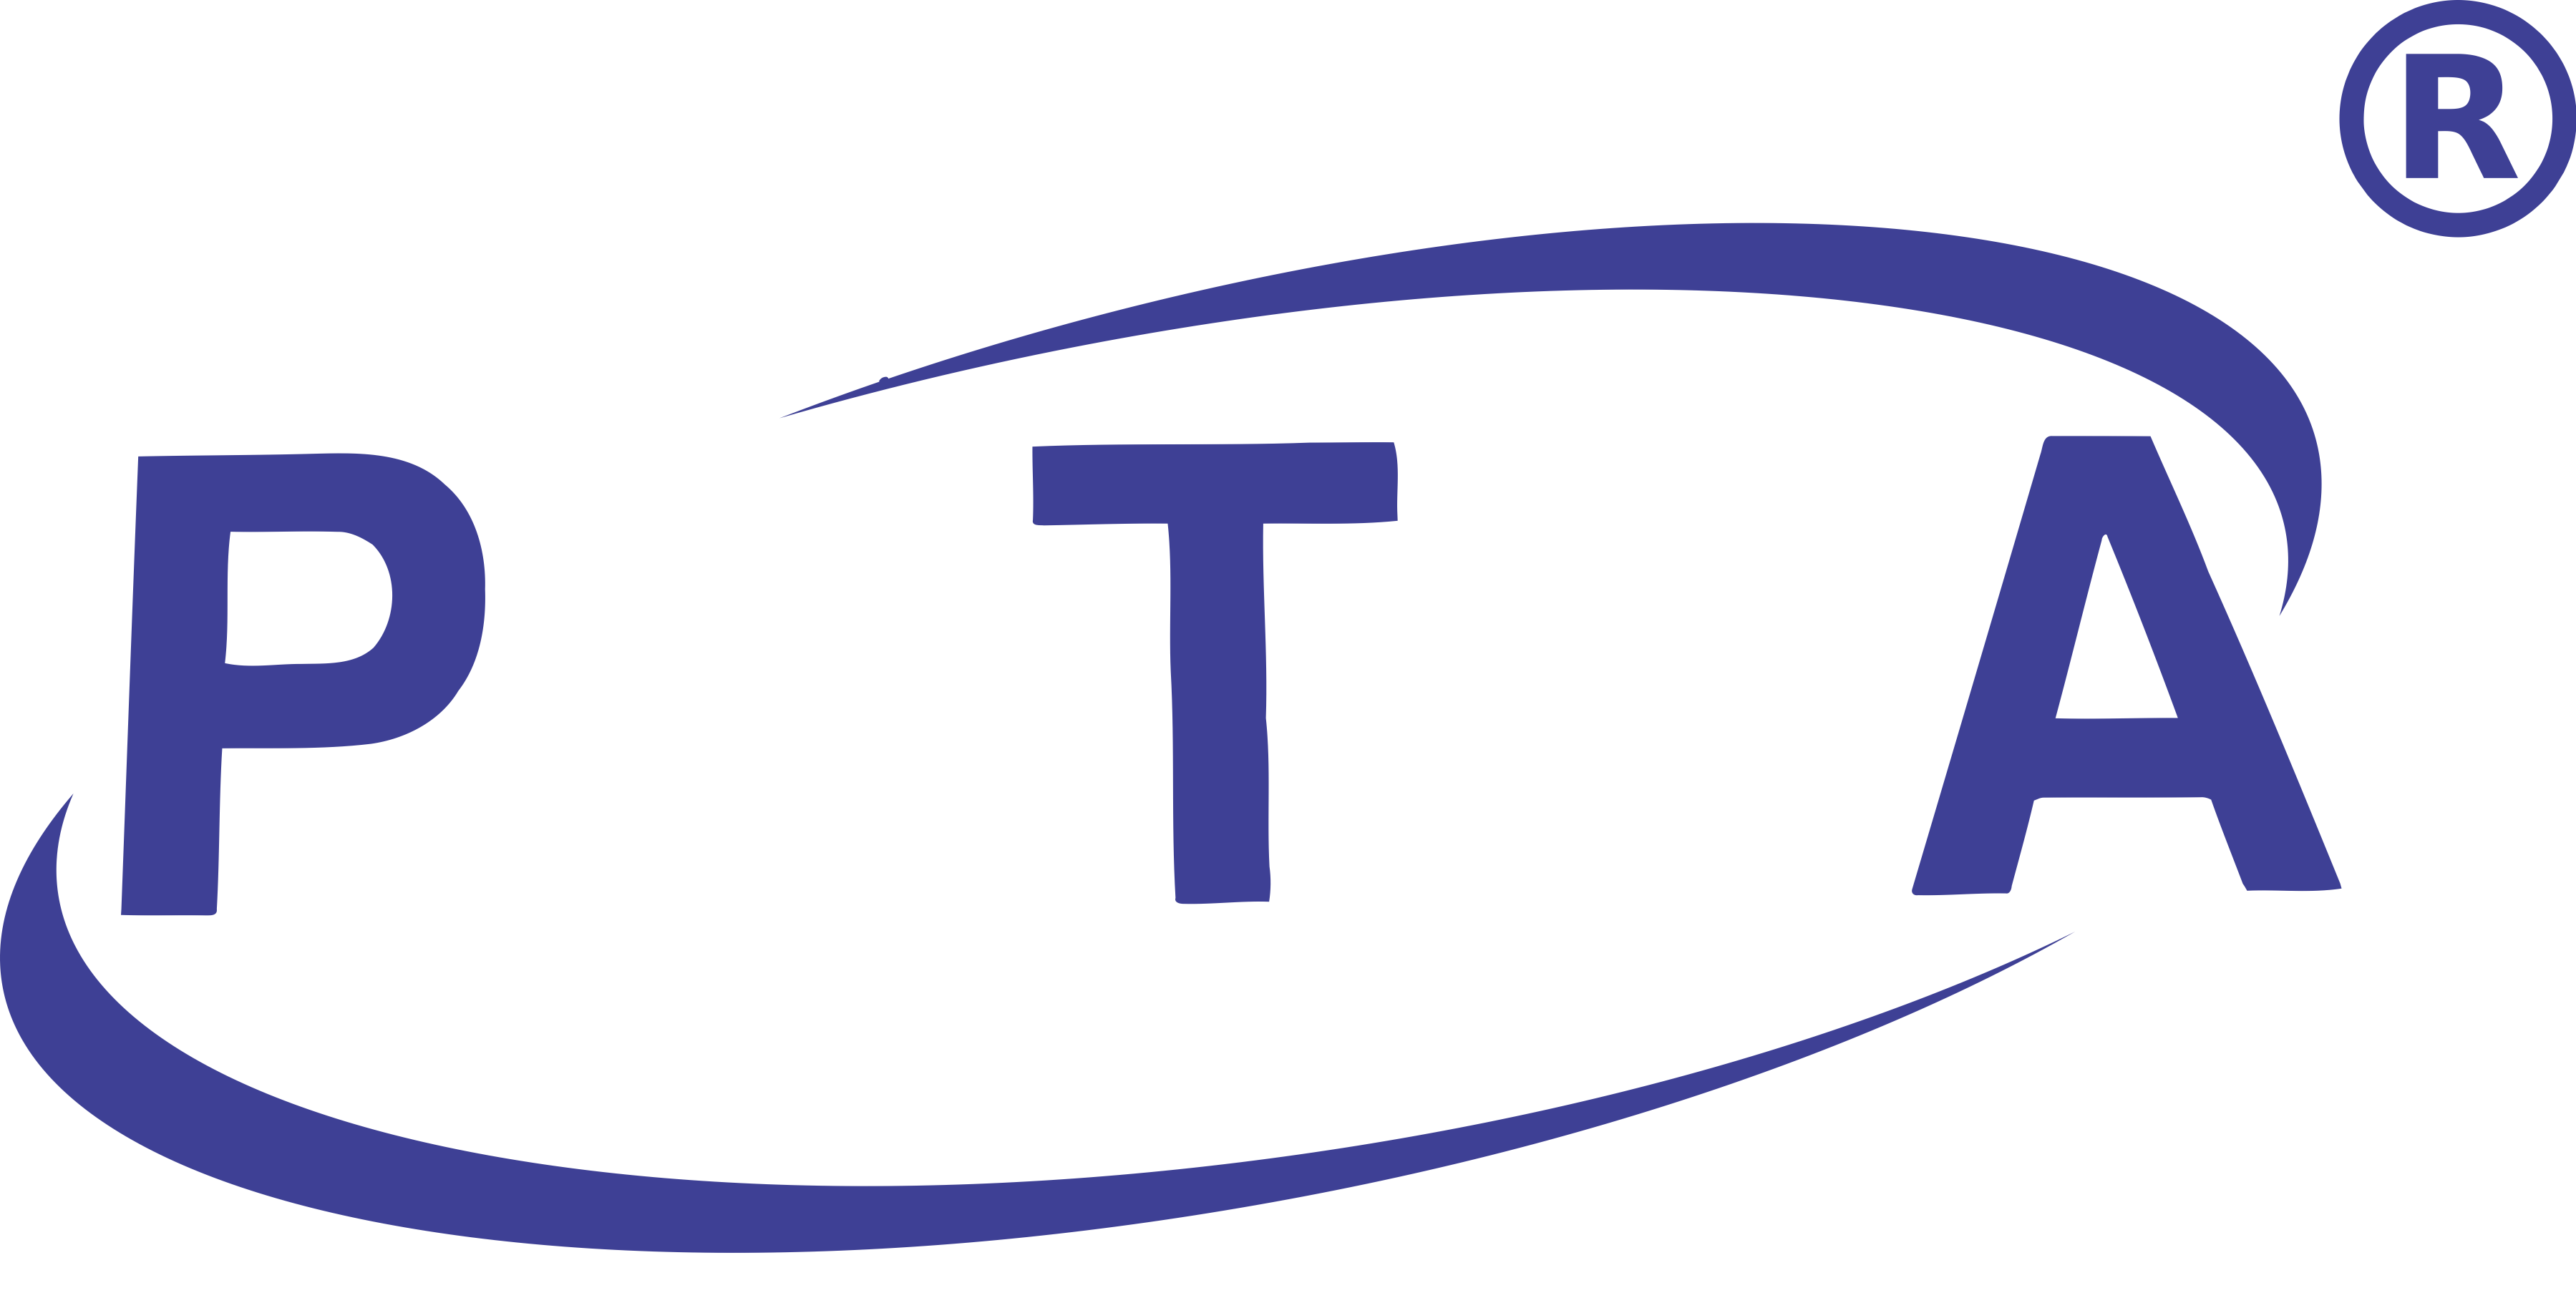 PTA Brands